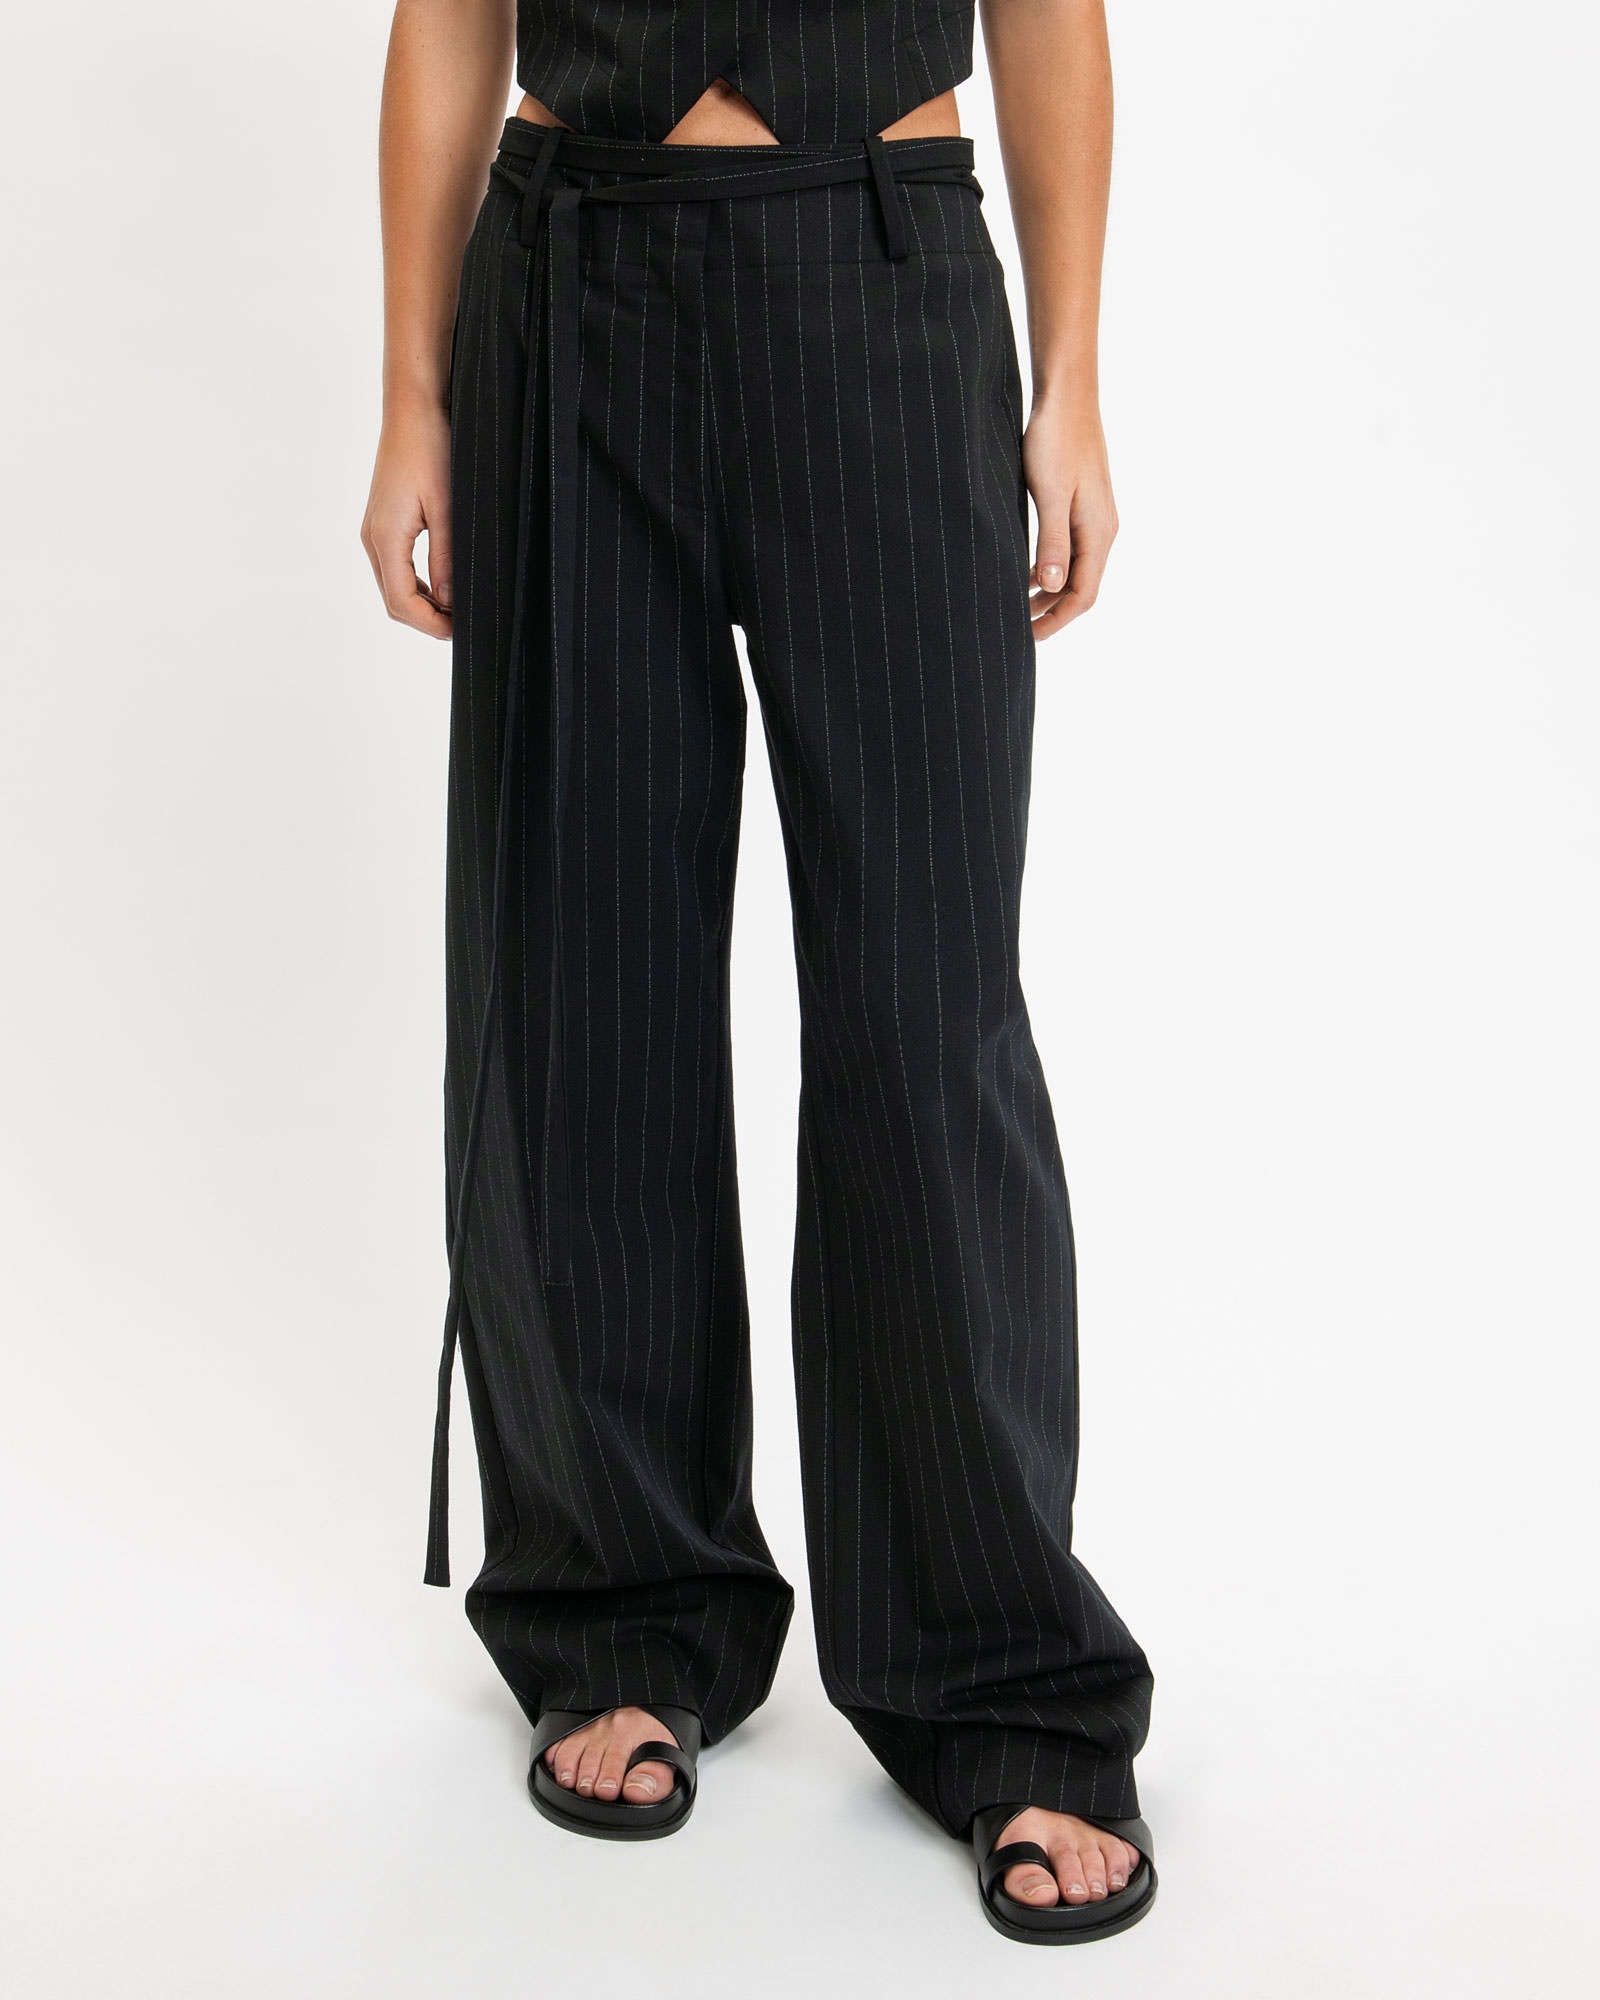 Pinstripe Tie Detail Pant | Buy Pants Online - Cue